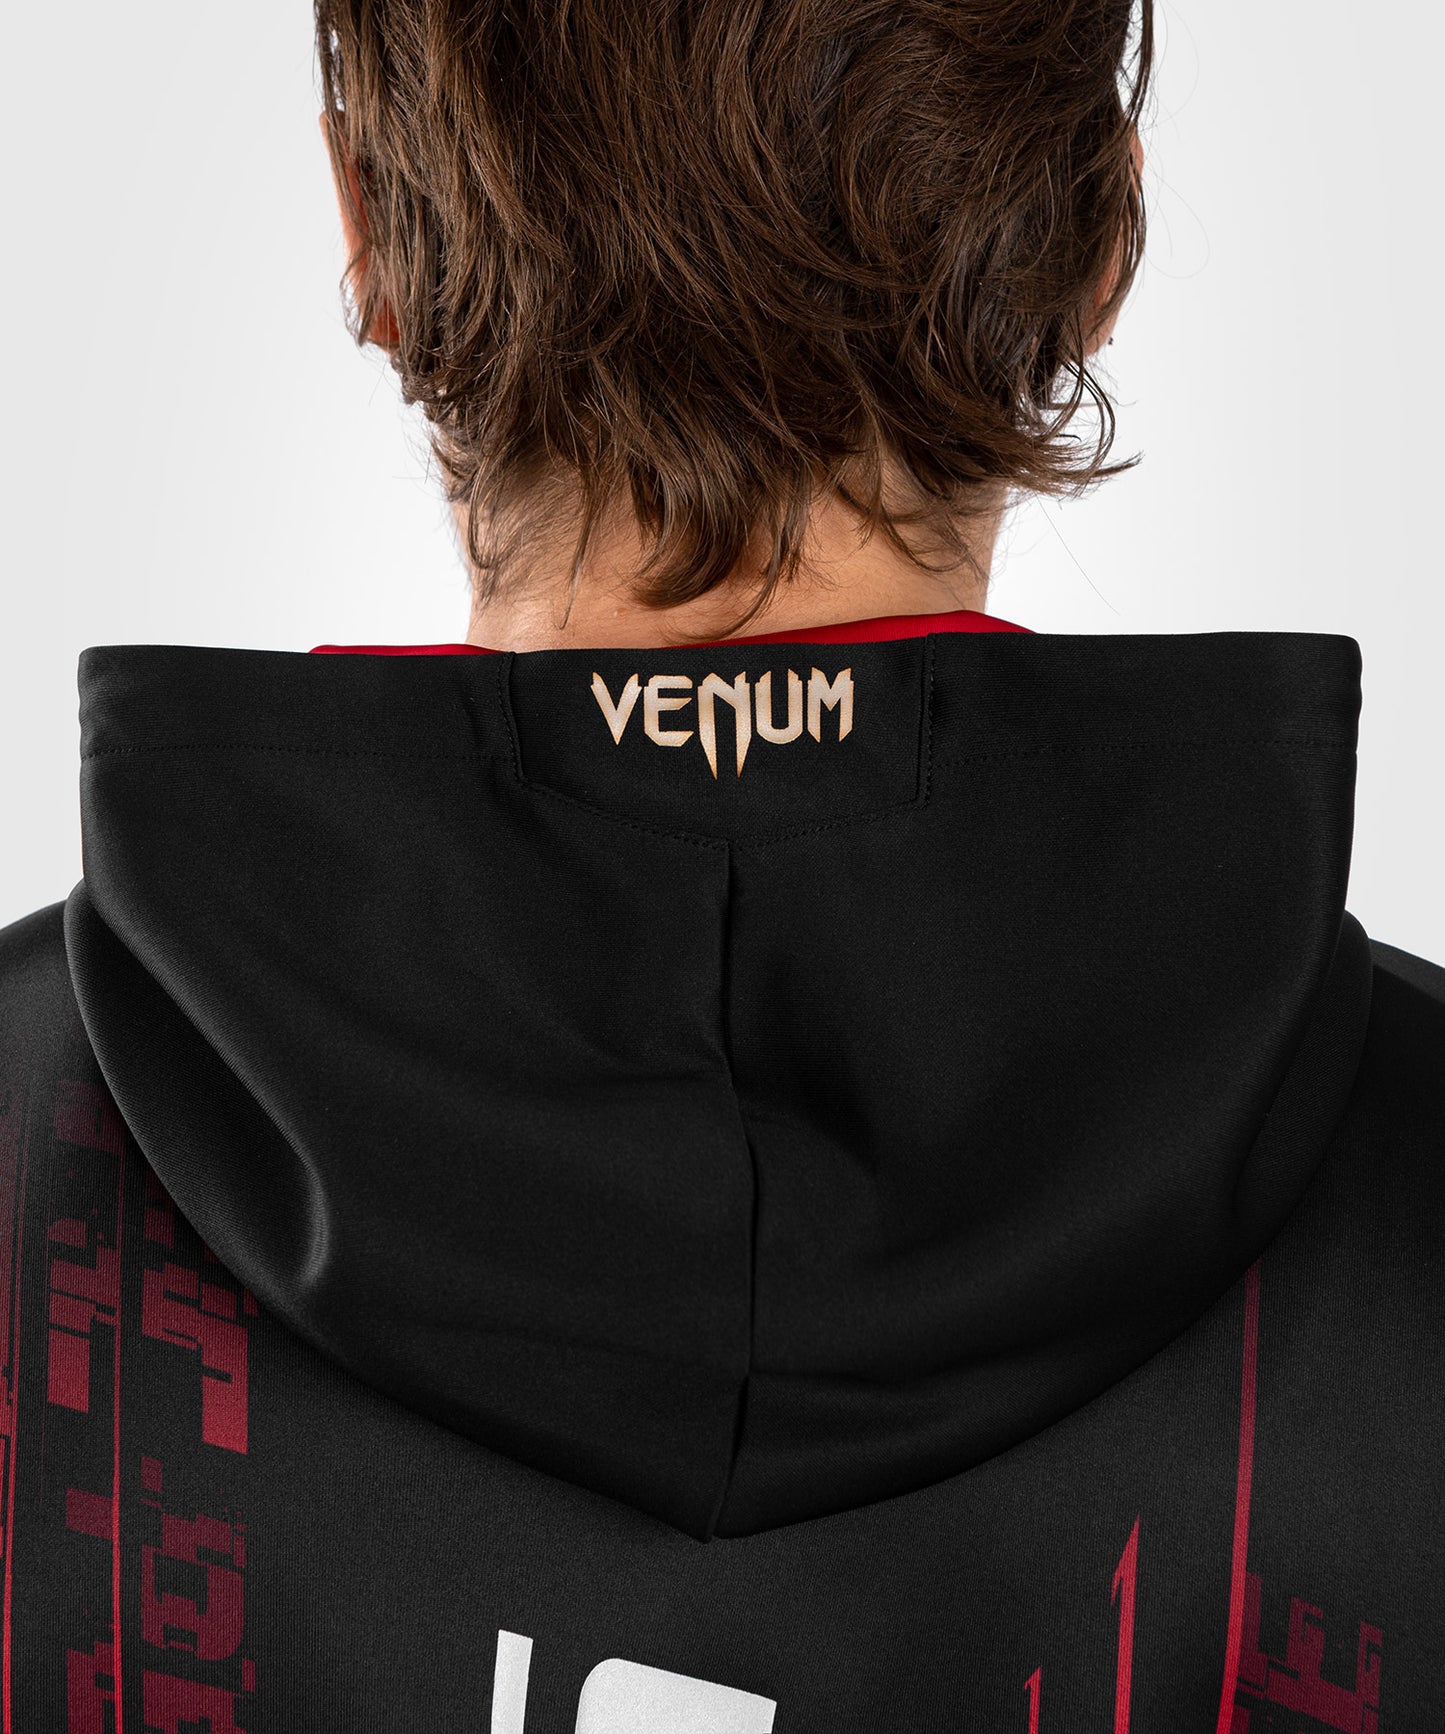 UFC Venum Performance Institute 2.0 Men’s Zip Hoodie - Black/Red